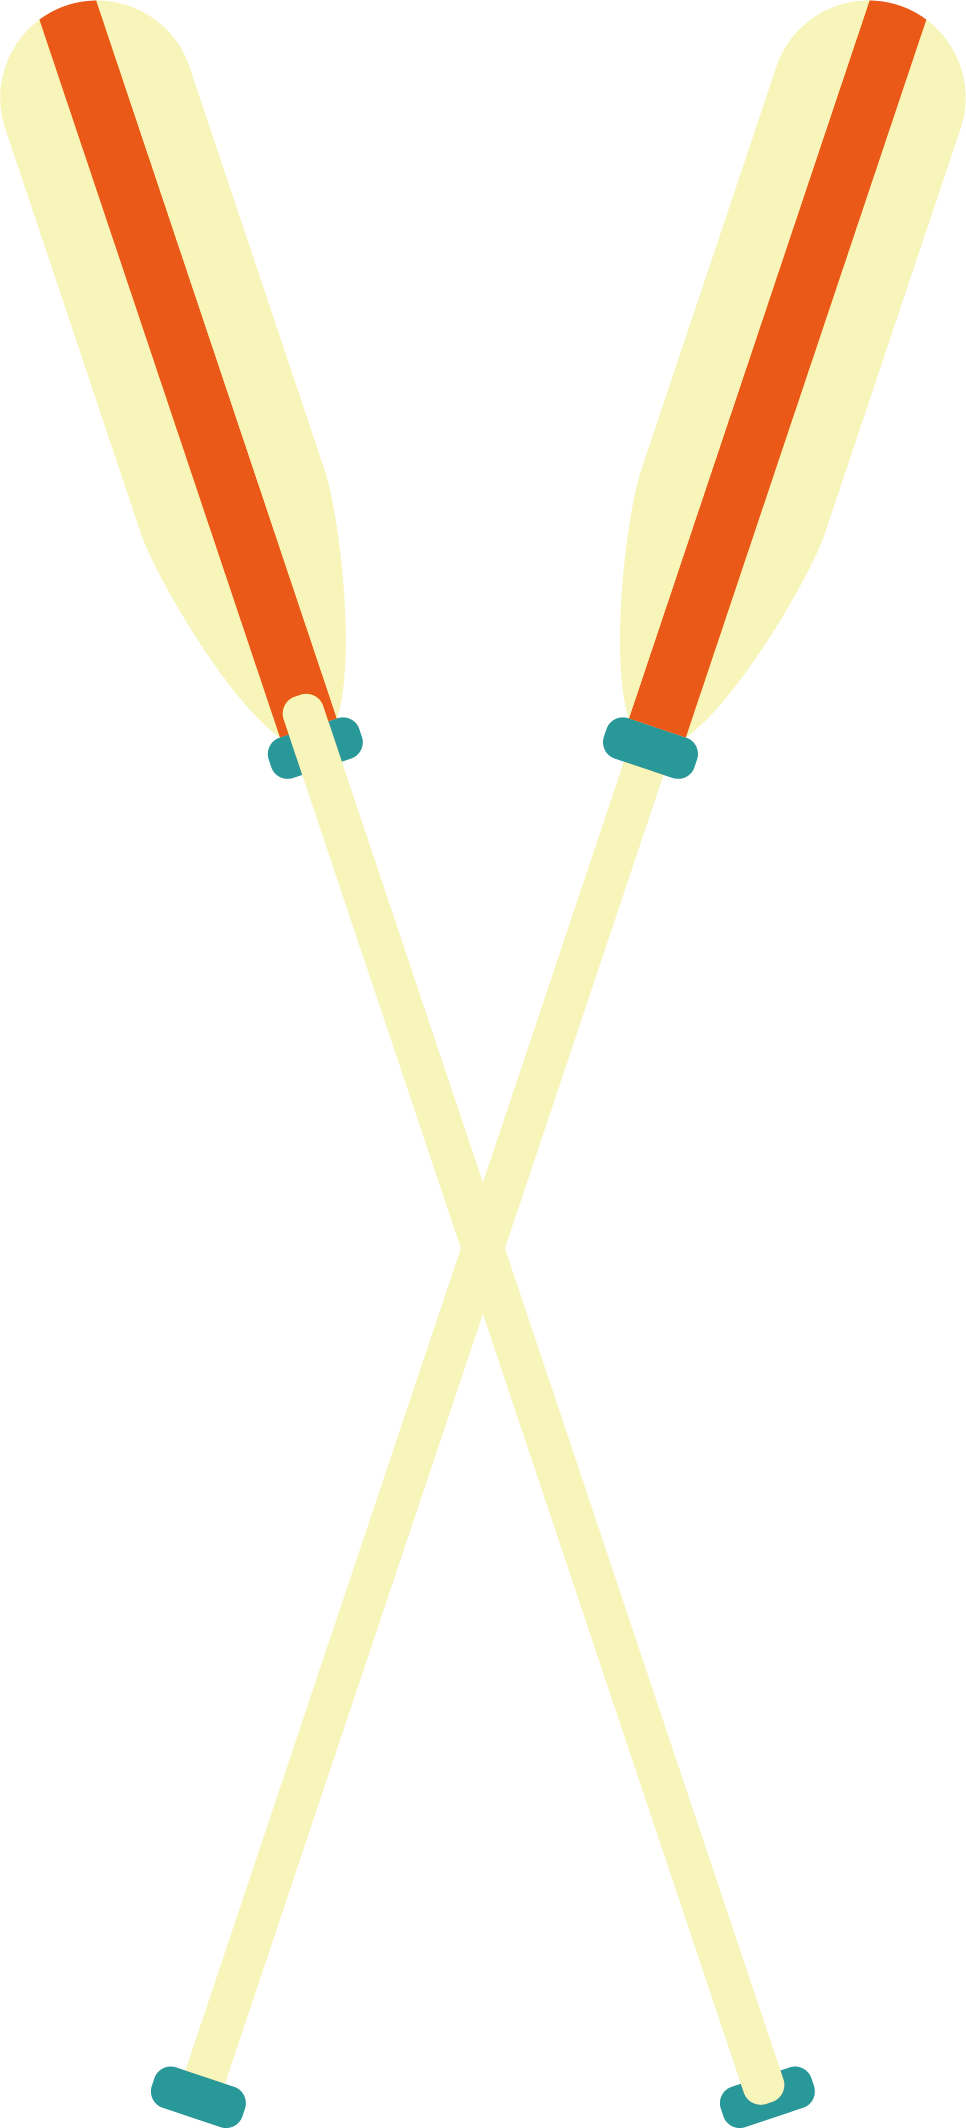 Rowing Oar - Rowing Oar (966x2128)